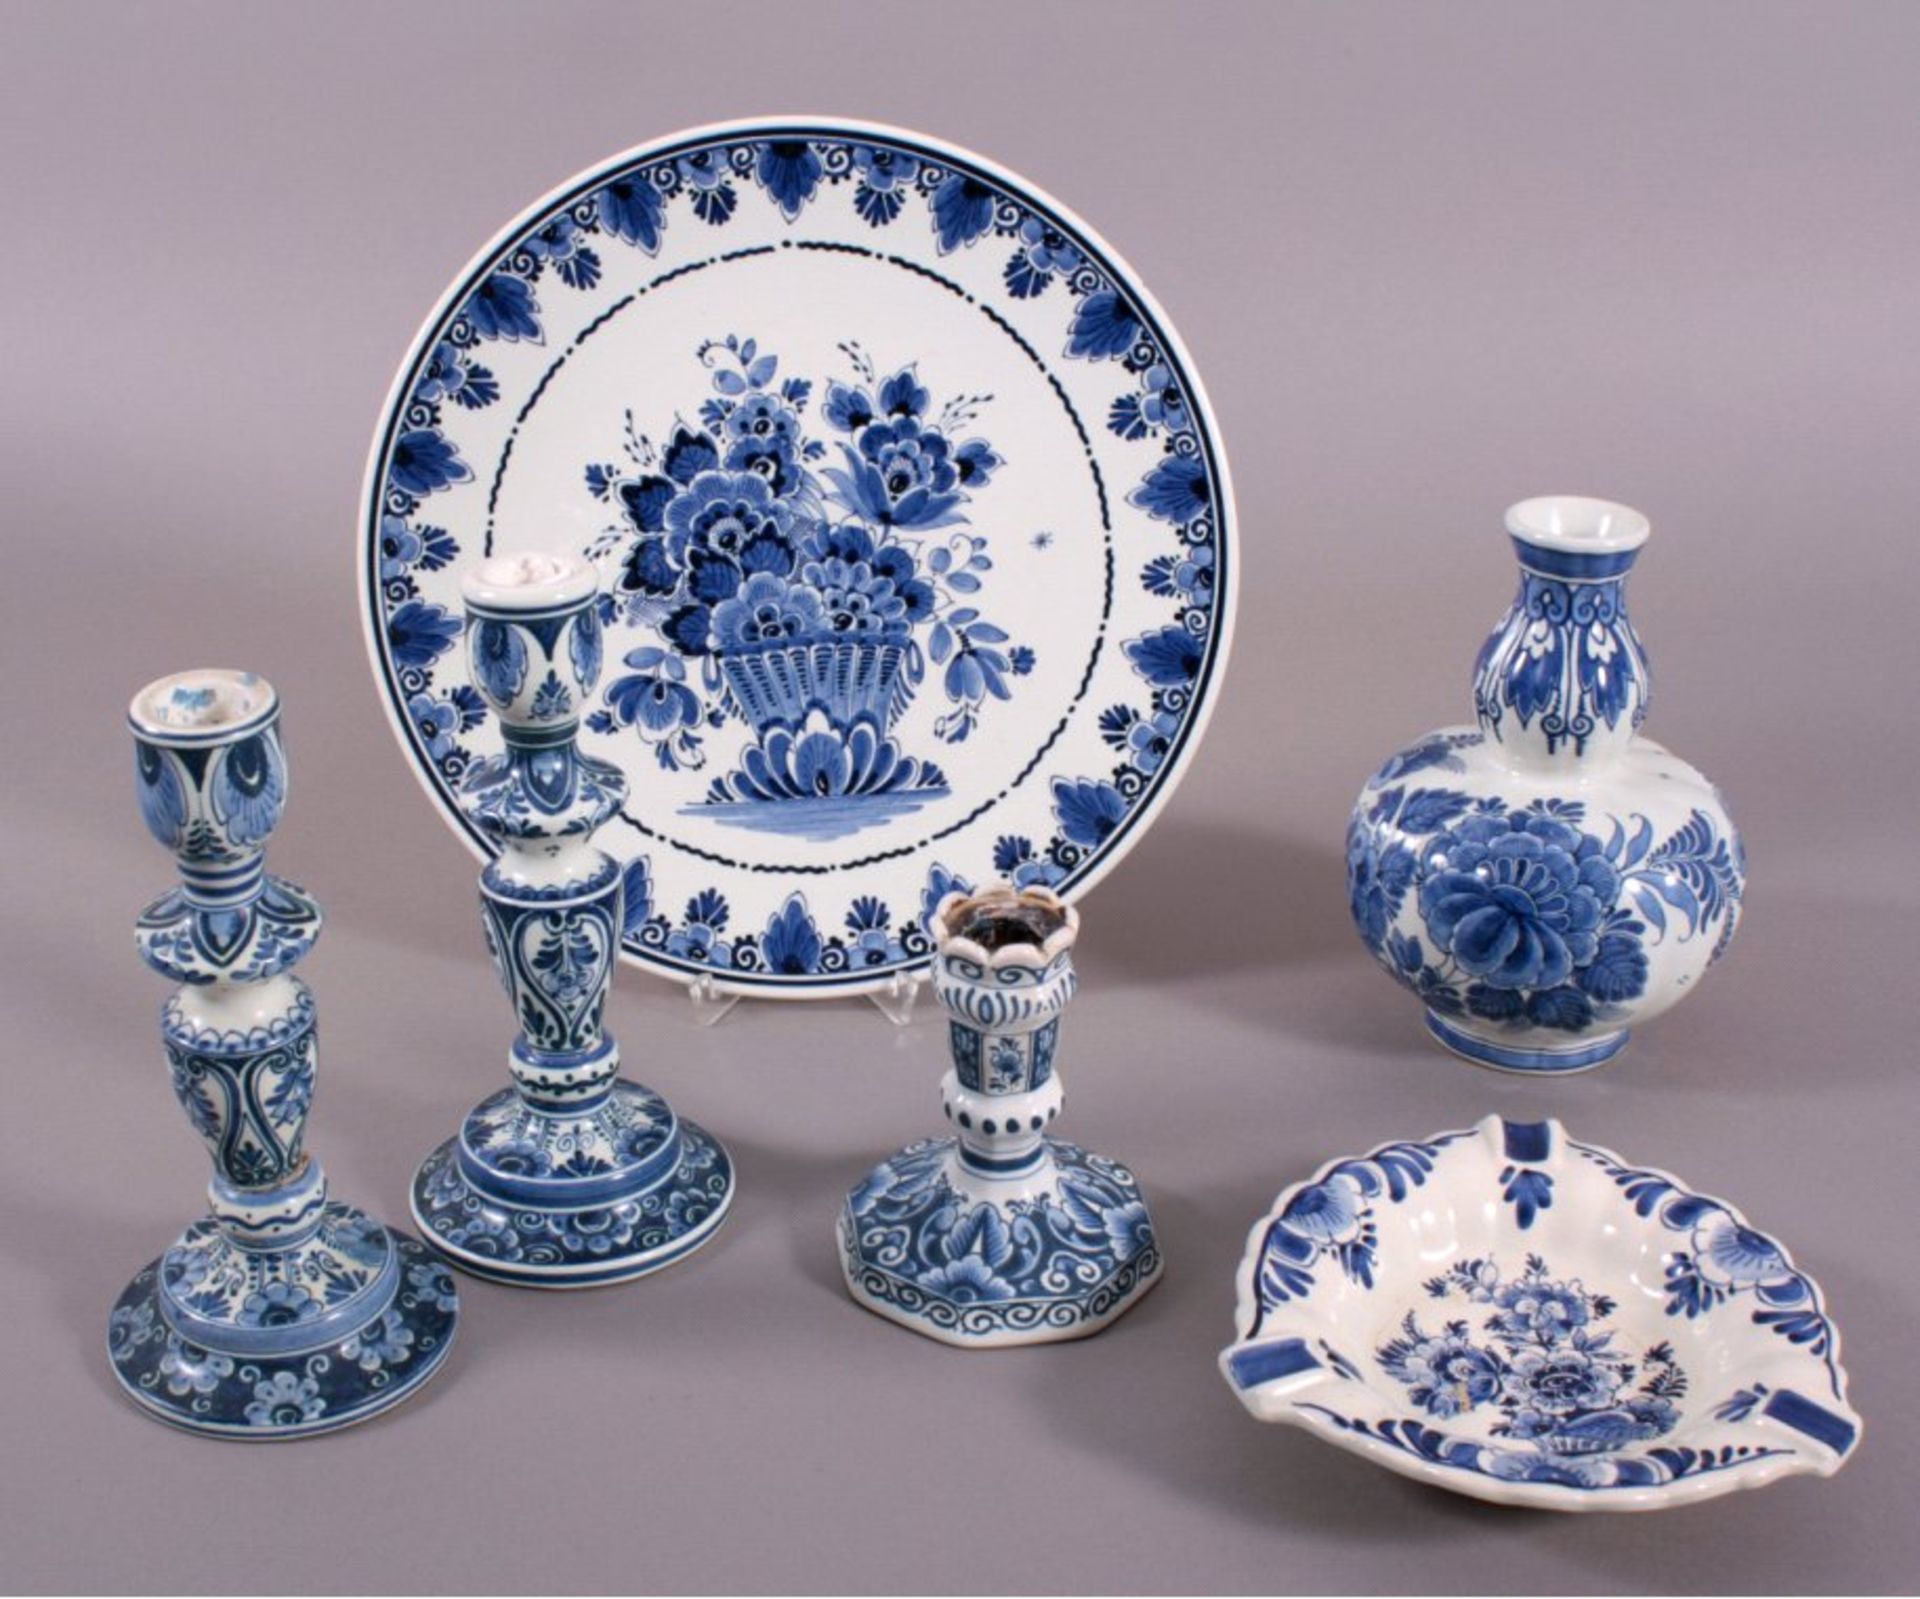 Konvolut Keramik/Porzellan, DelftVerschiedene florale Blaudekore, unterschiedlicheAusführungen.